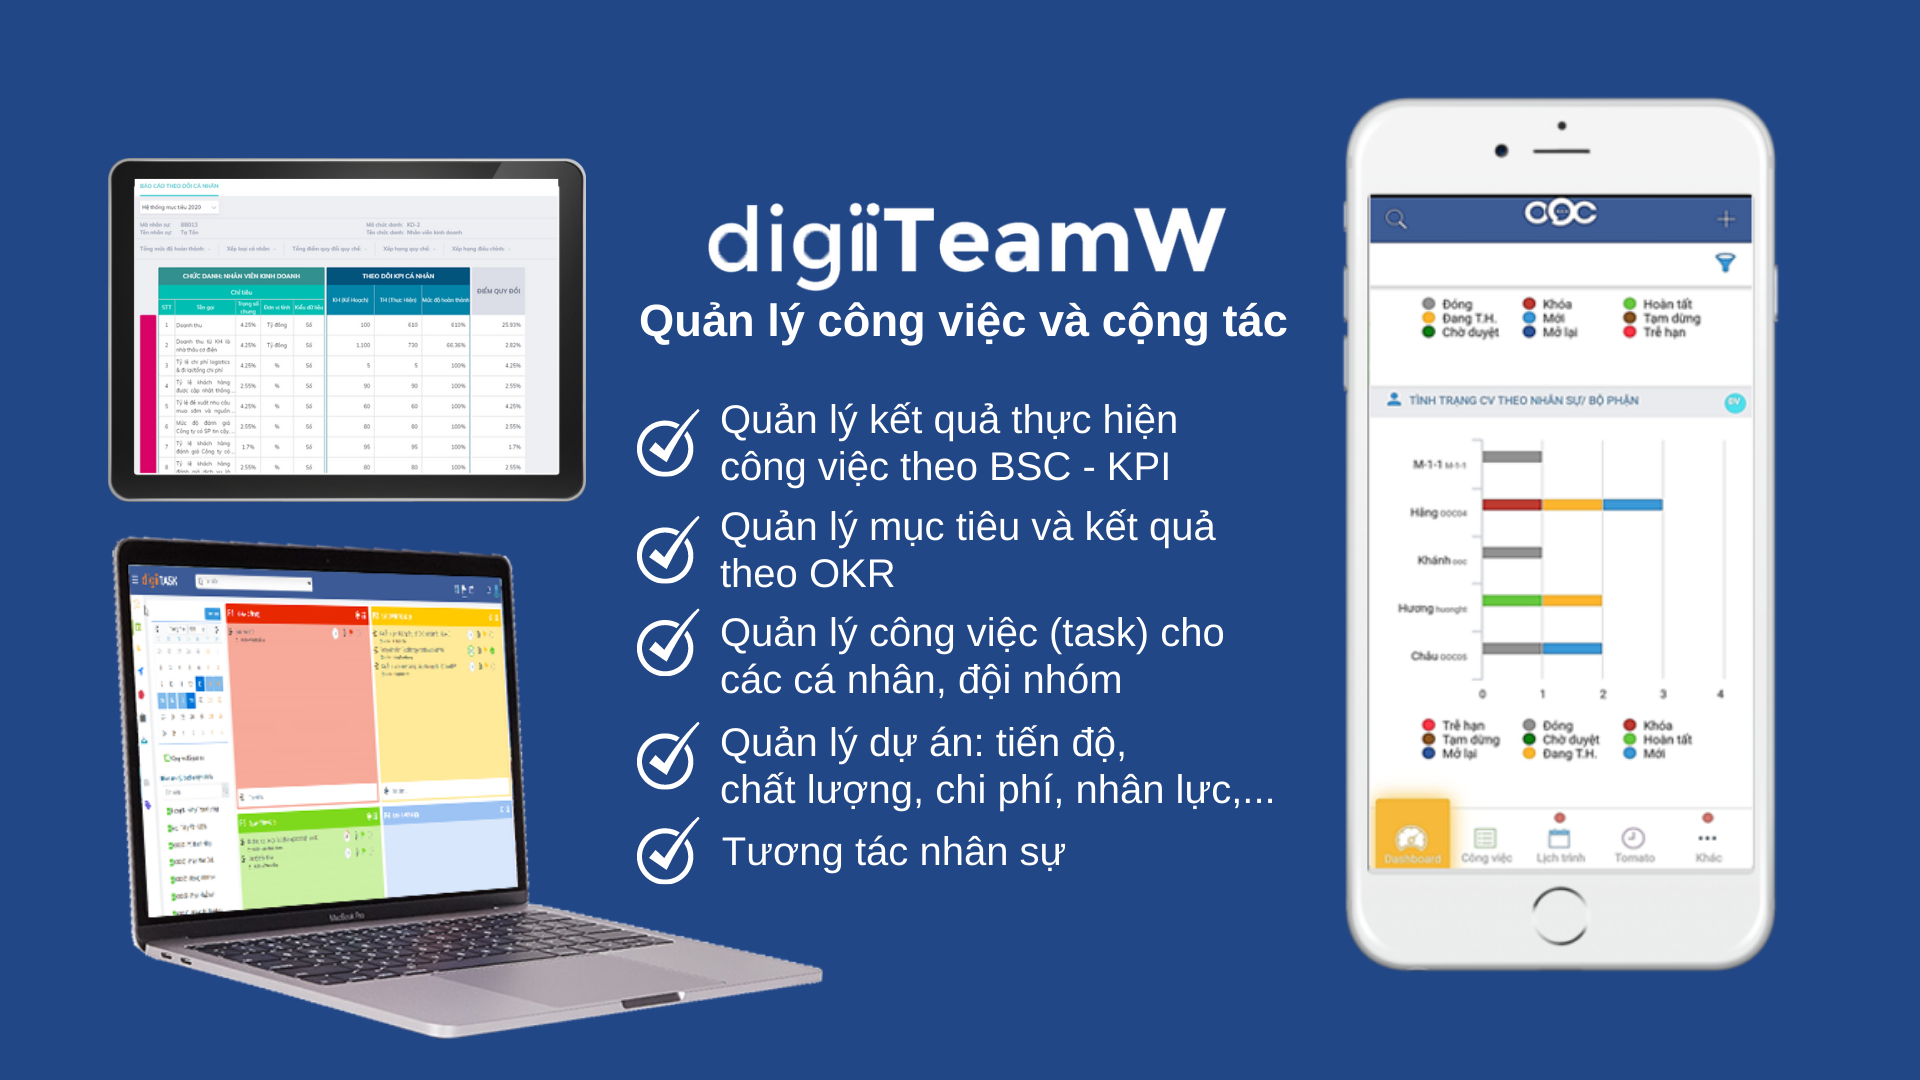 digiiTeamW - Quản lý công việc và cộng tác